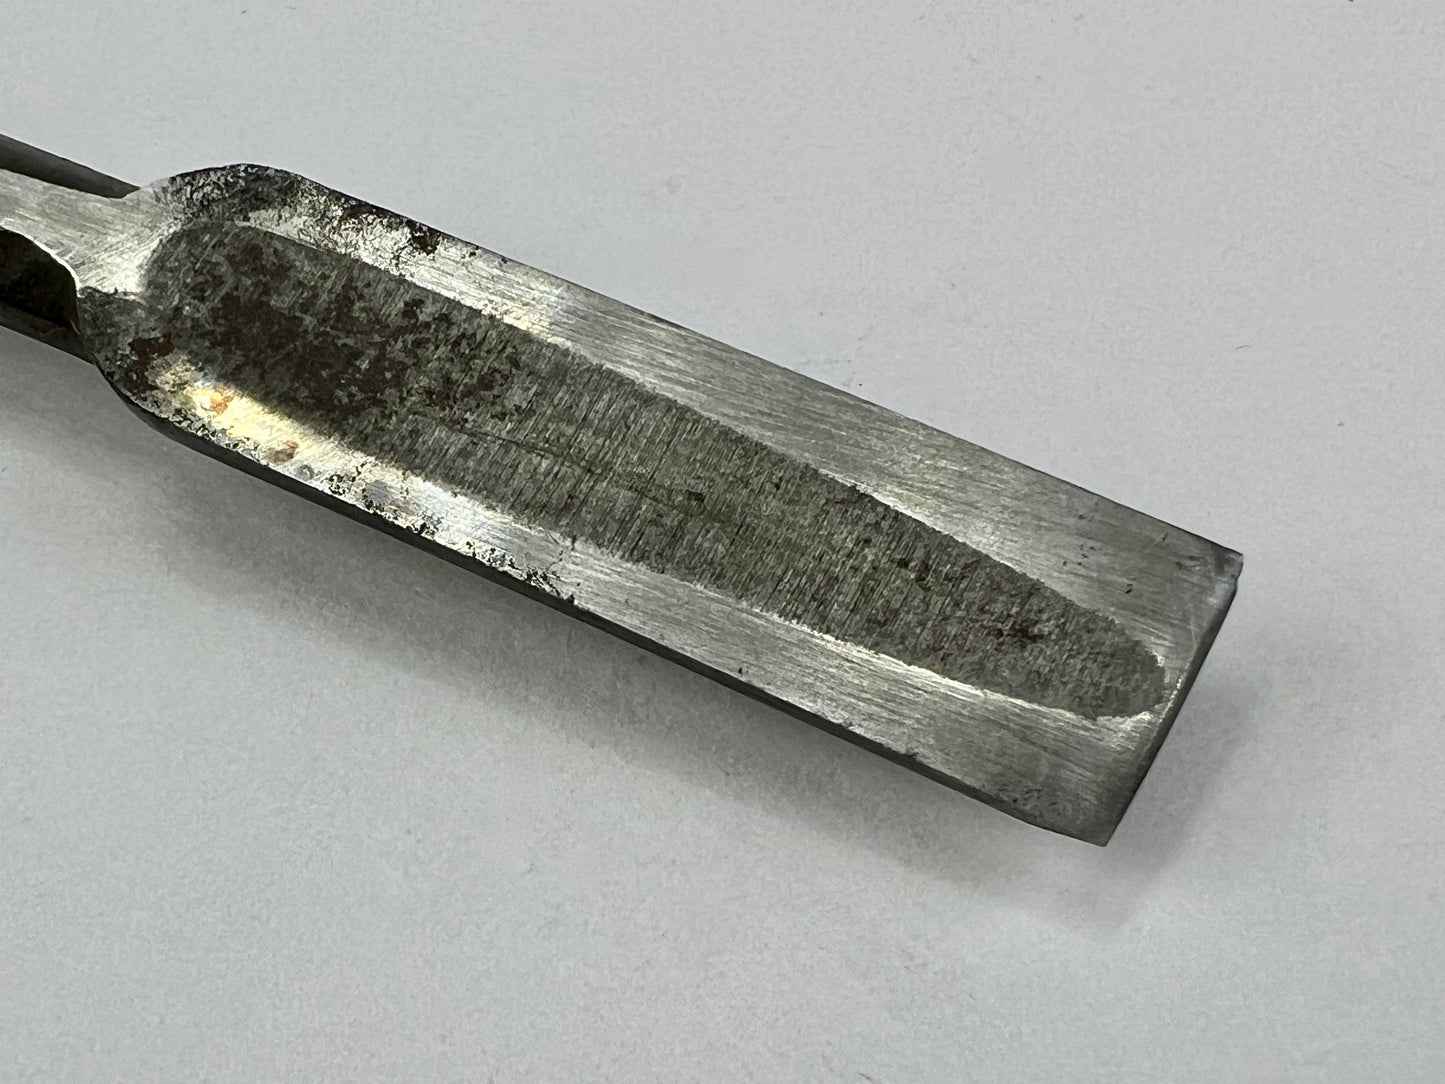 Vintage Japanese Signed Nomi Chisel 7/32" (11mm) Forged Iron Blade & Macassar Ebony Handle